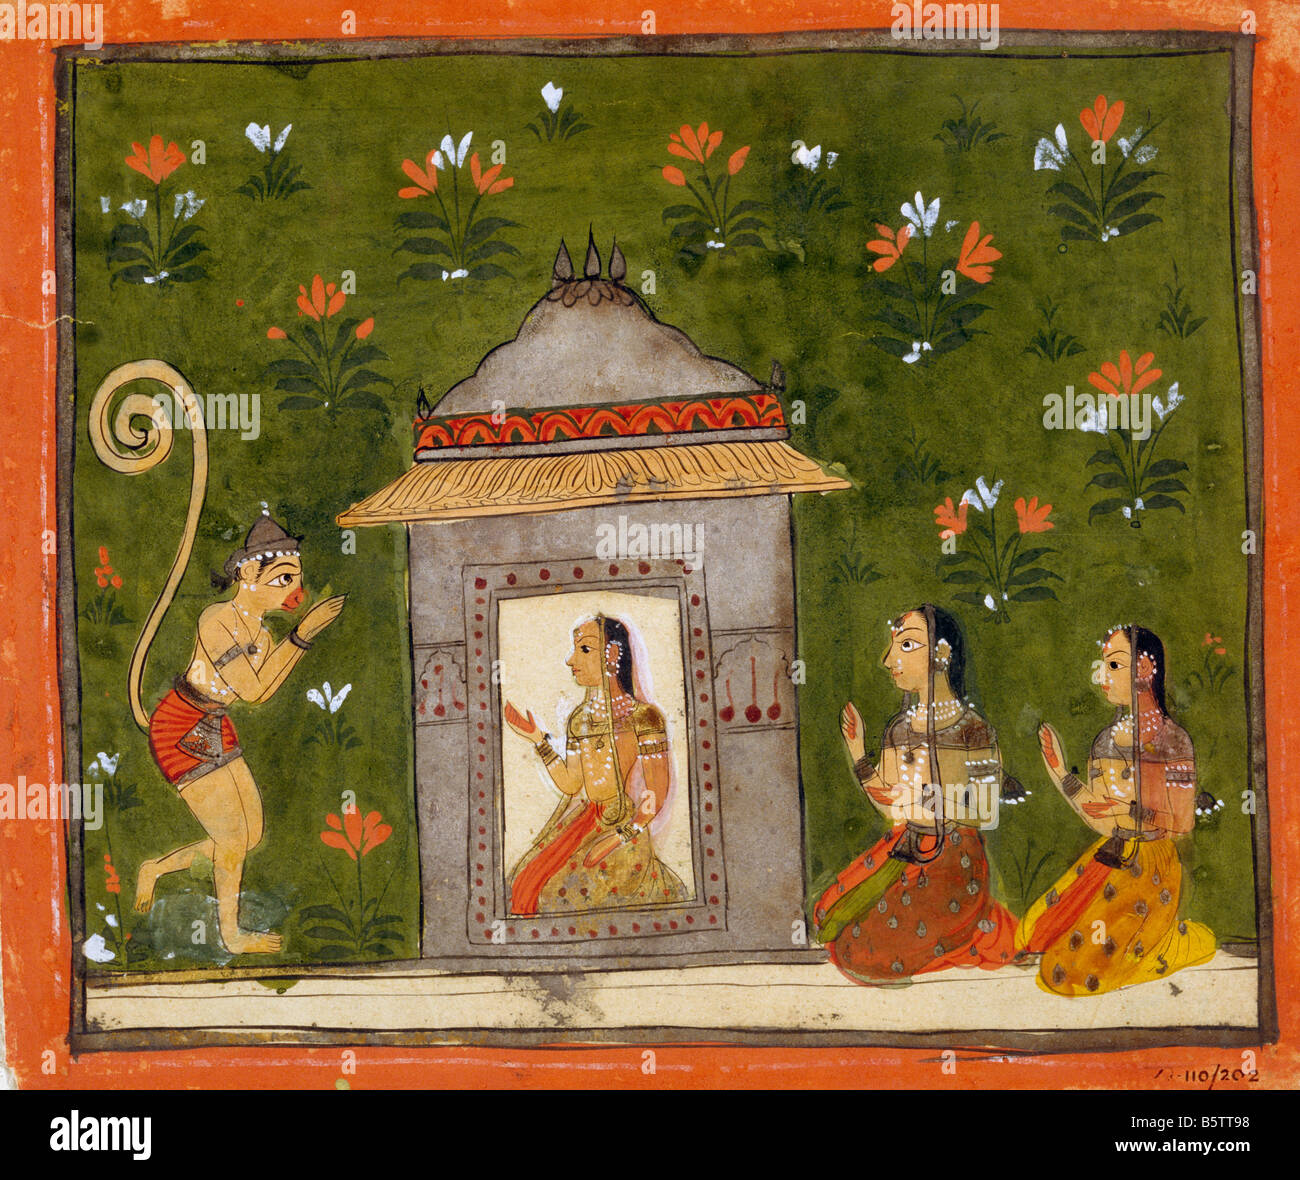 Hanuman antes Sita Deccan del siglo XVII de estilo folk. Museo Nacional de Nueva Delhi India 47.114/202 Foto de stock